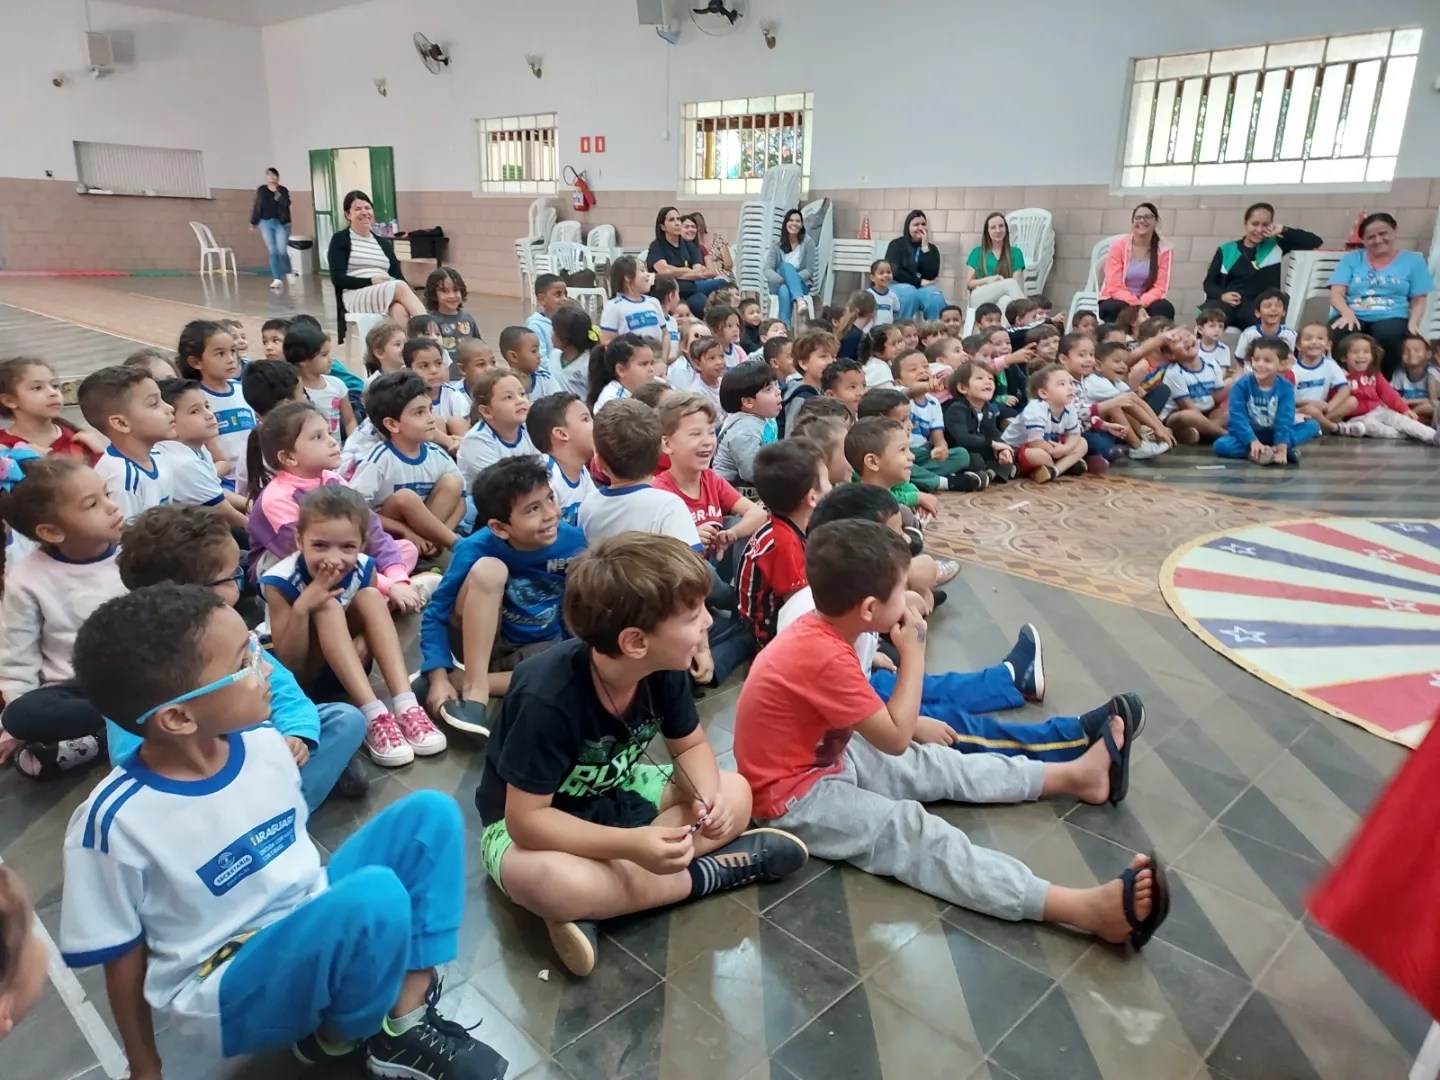 A prefeitura de Araguari, através da secretaria de Educação e FAEC, está proporcionando nesta semana, aos alunos de 11 unidades educacionais municipais, o espetáculo: Enquanto seu lobo não vem...